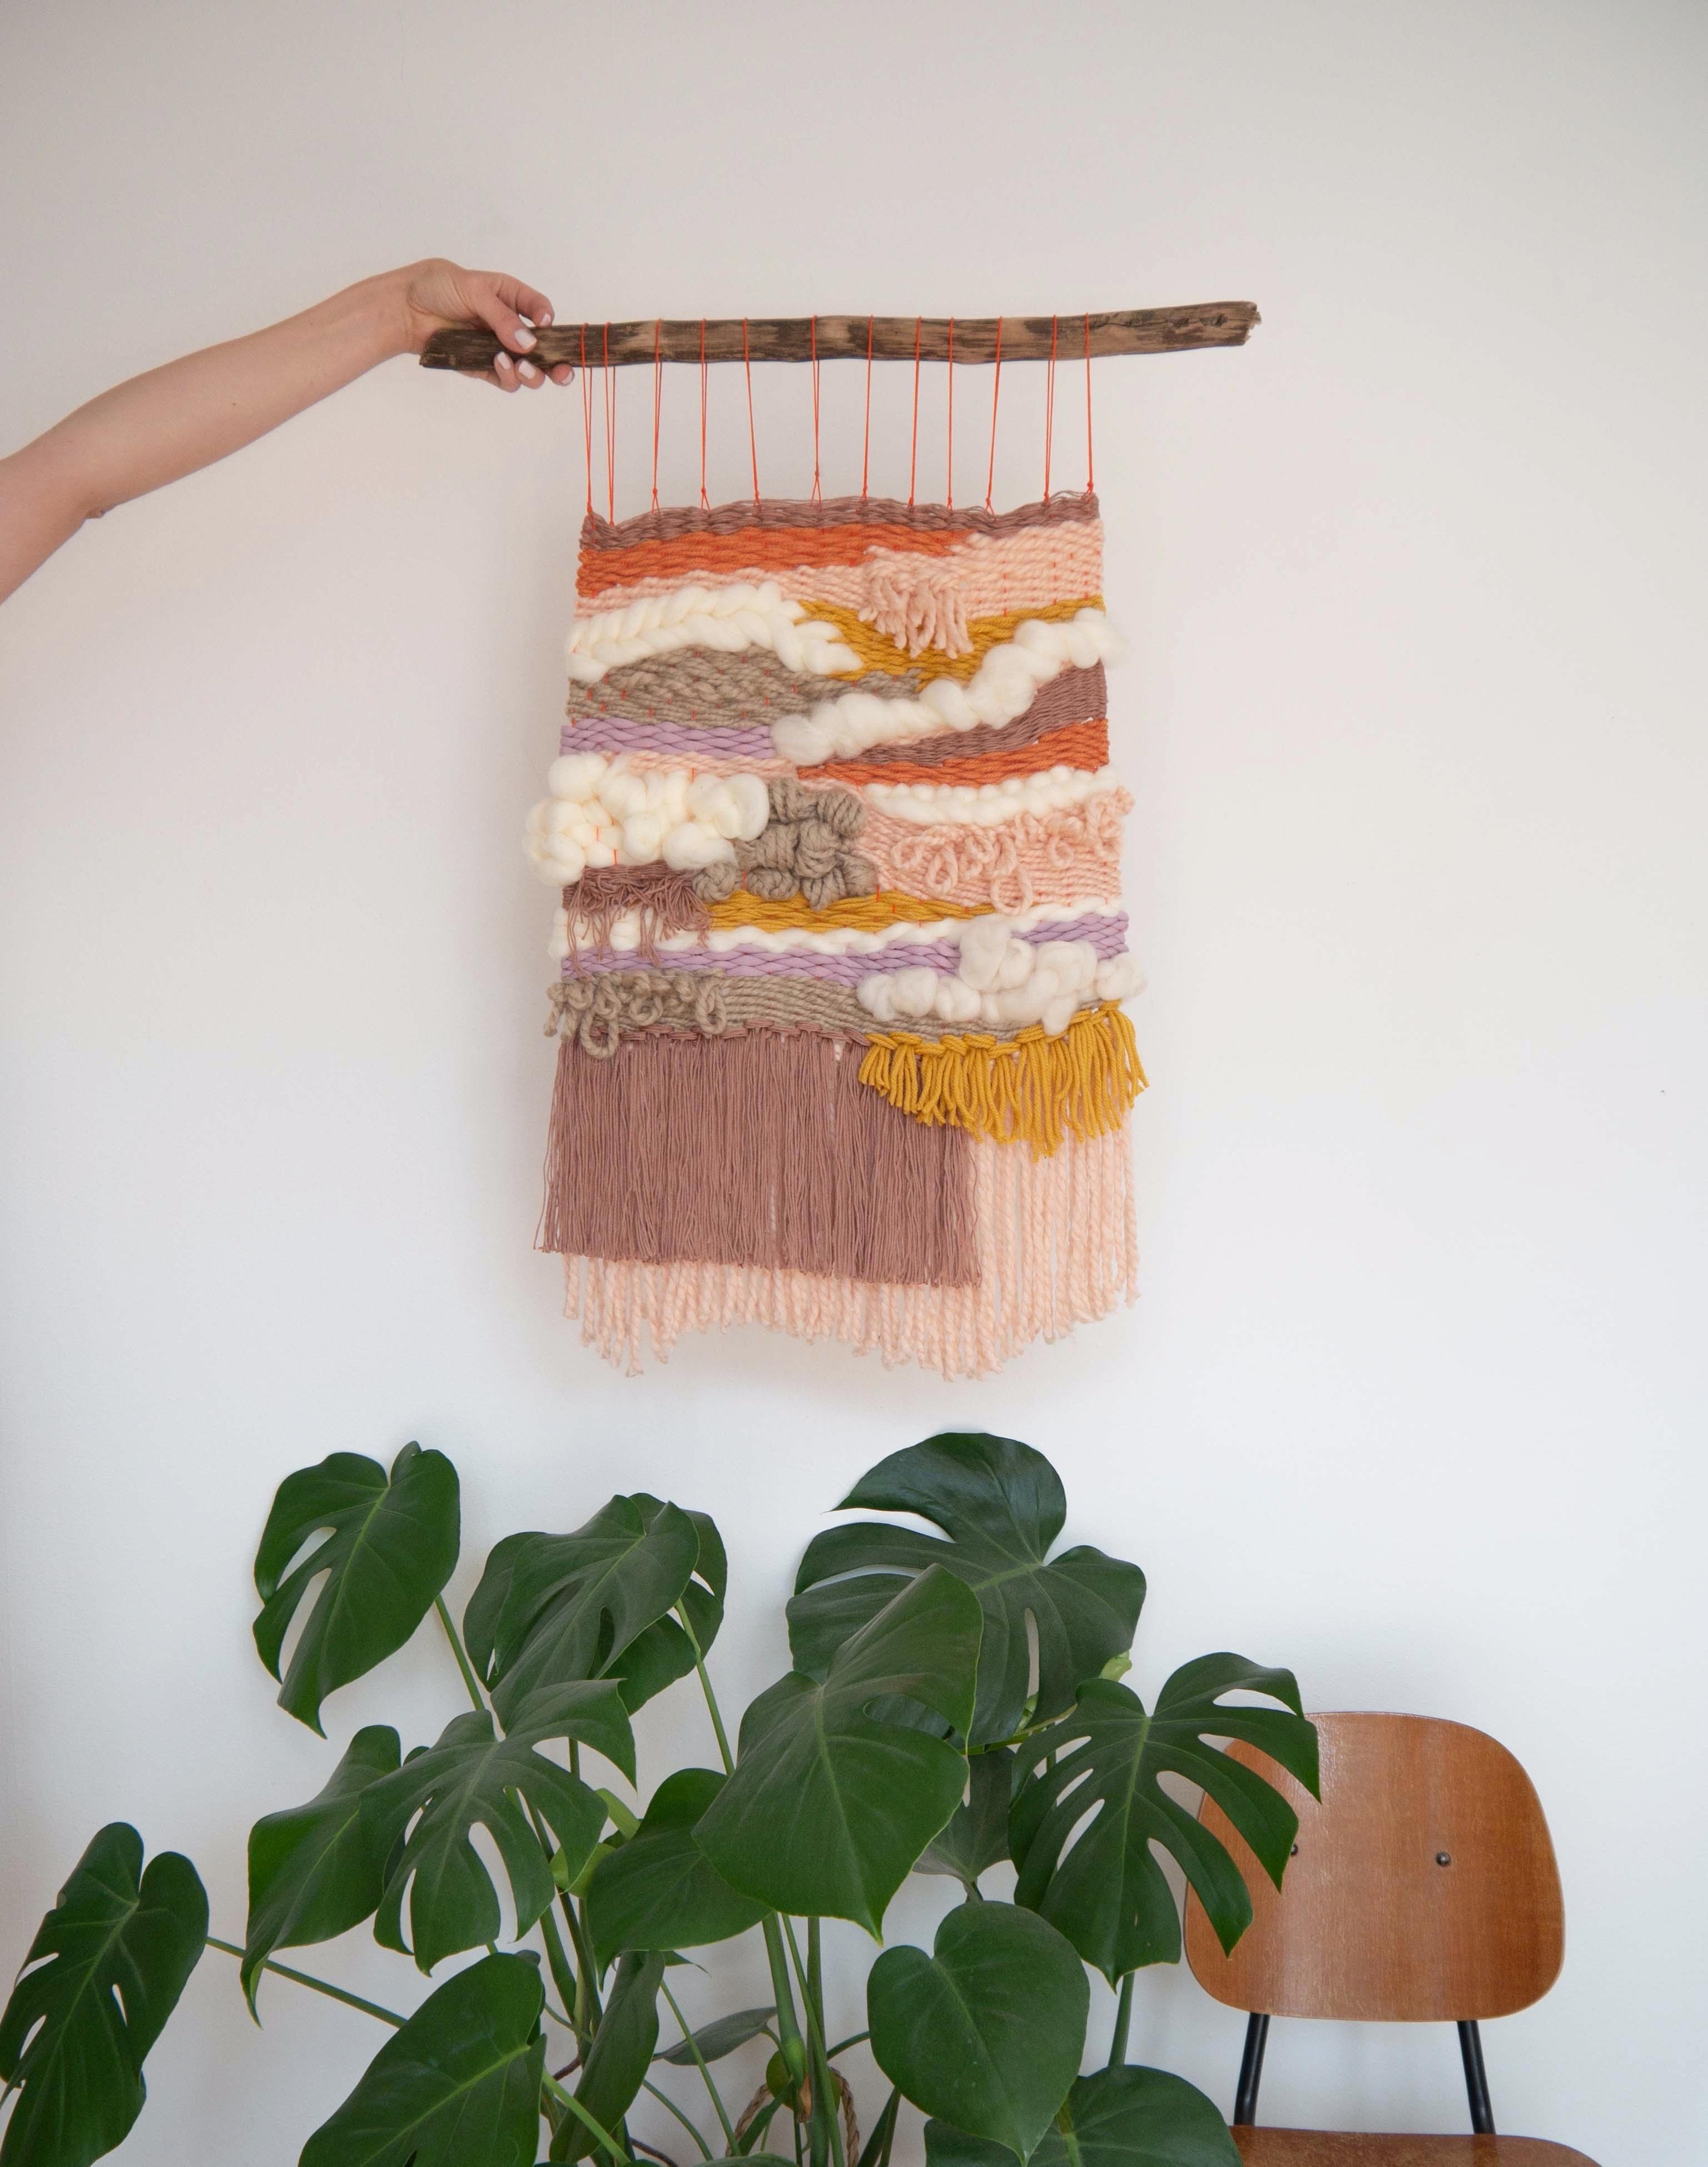 Kennt Ihr schon tapestry weaving? Das müsst Ihr unbedingt ausprobieren 😍 #kreativzeit #tapestryweaving #diy